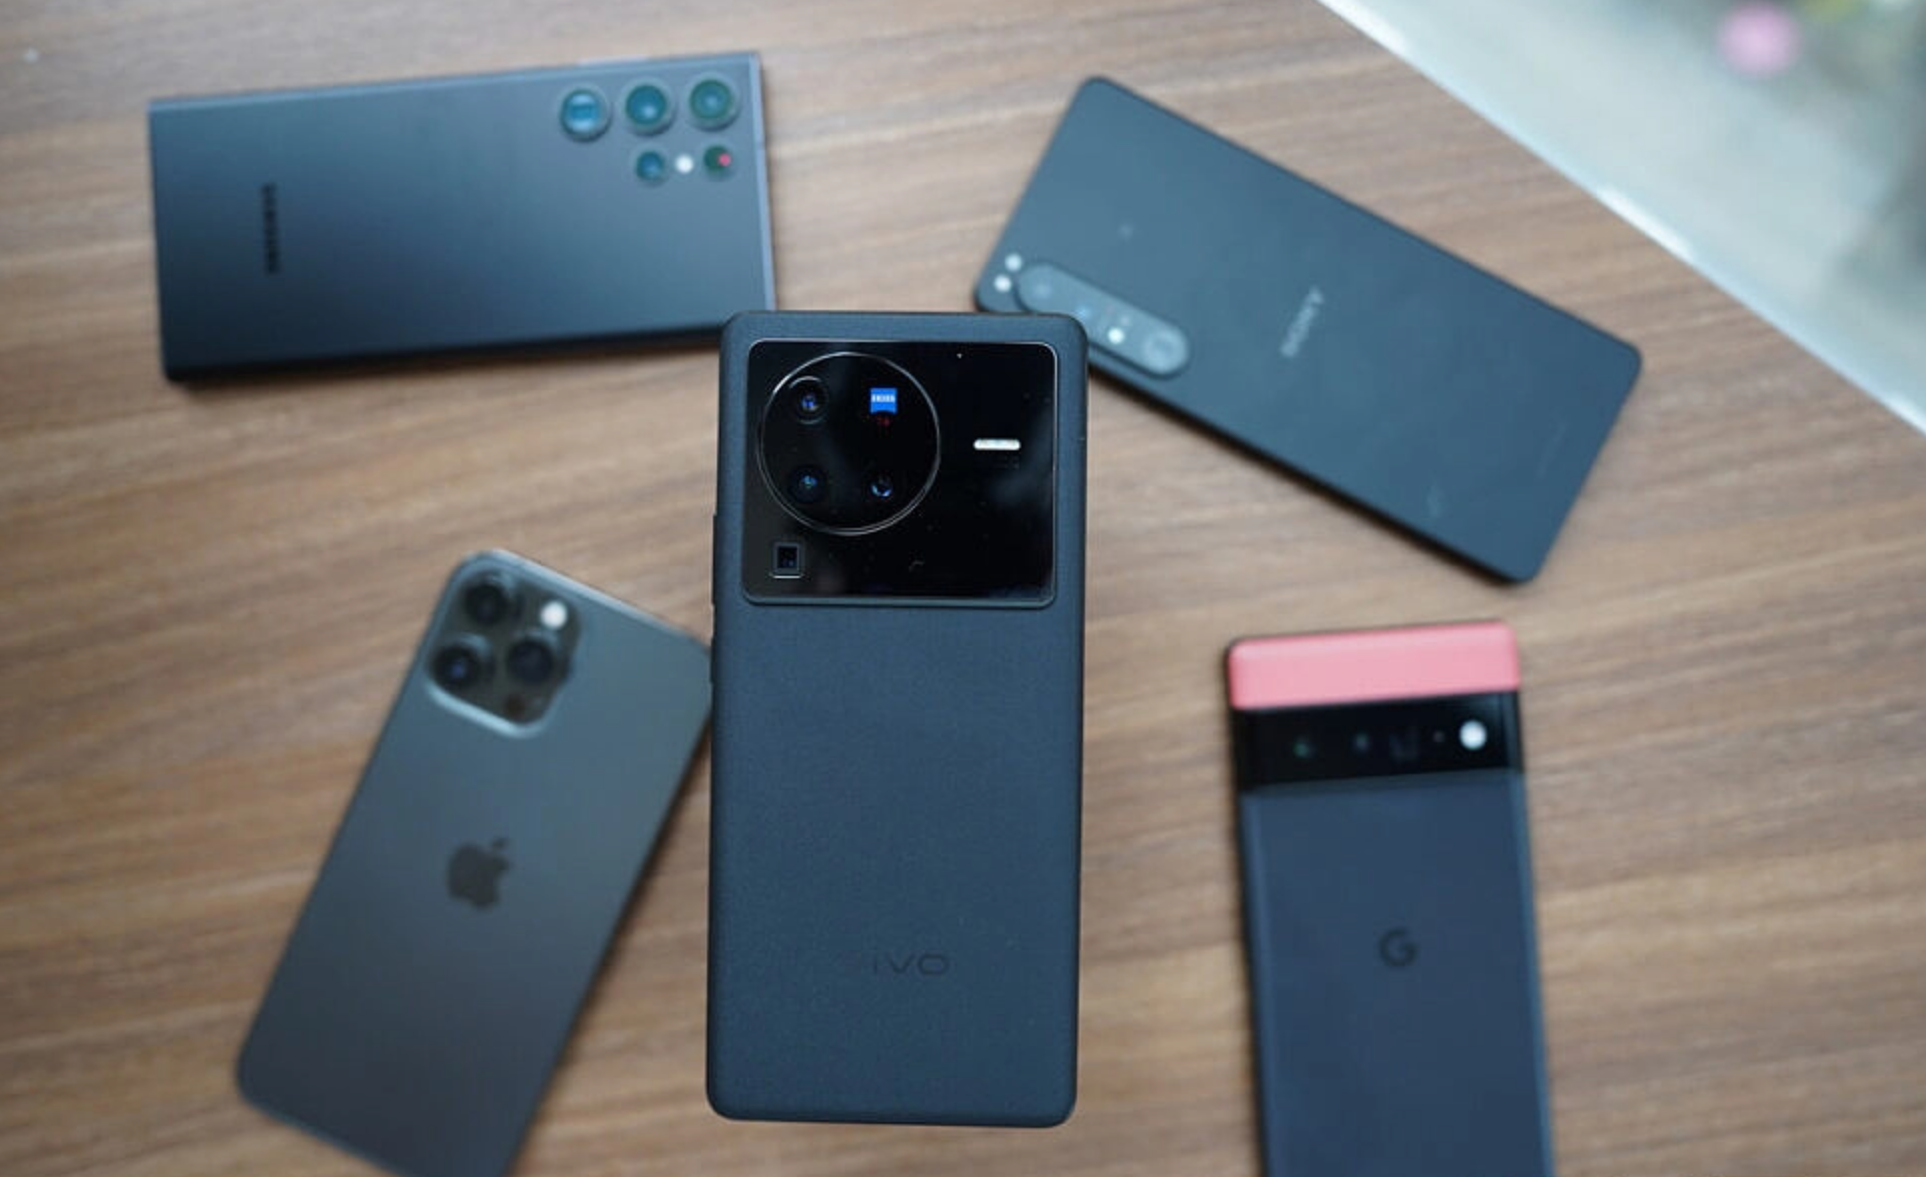 Сравнение смартфонов с лучшими камерами: Samsung против Google Pixel, Huawei и Vivo